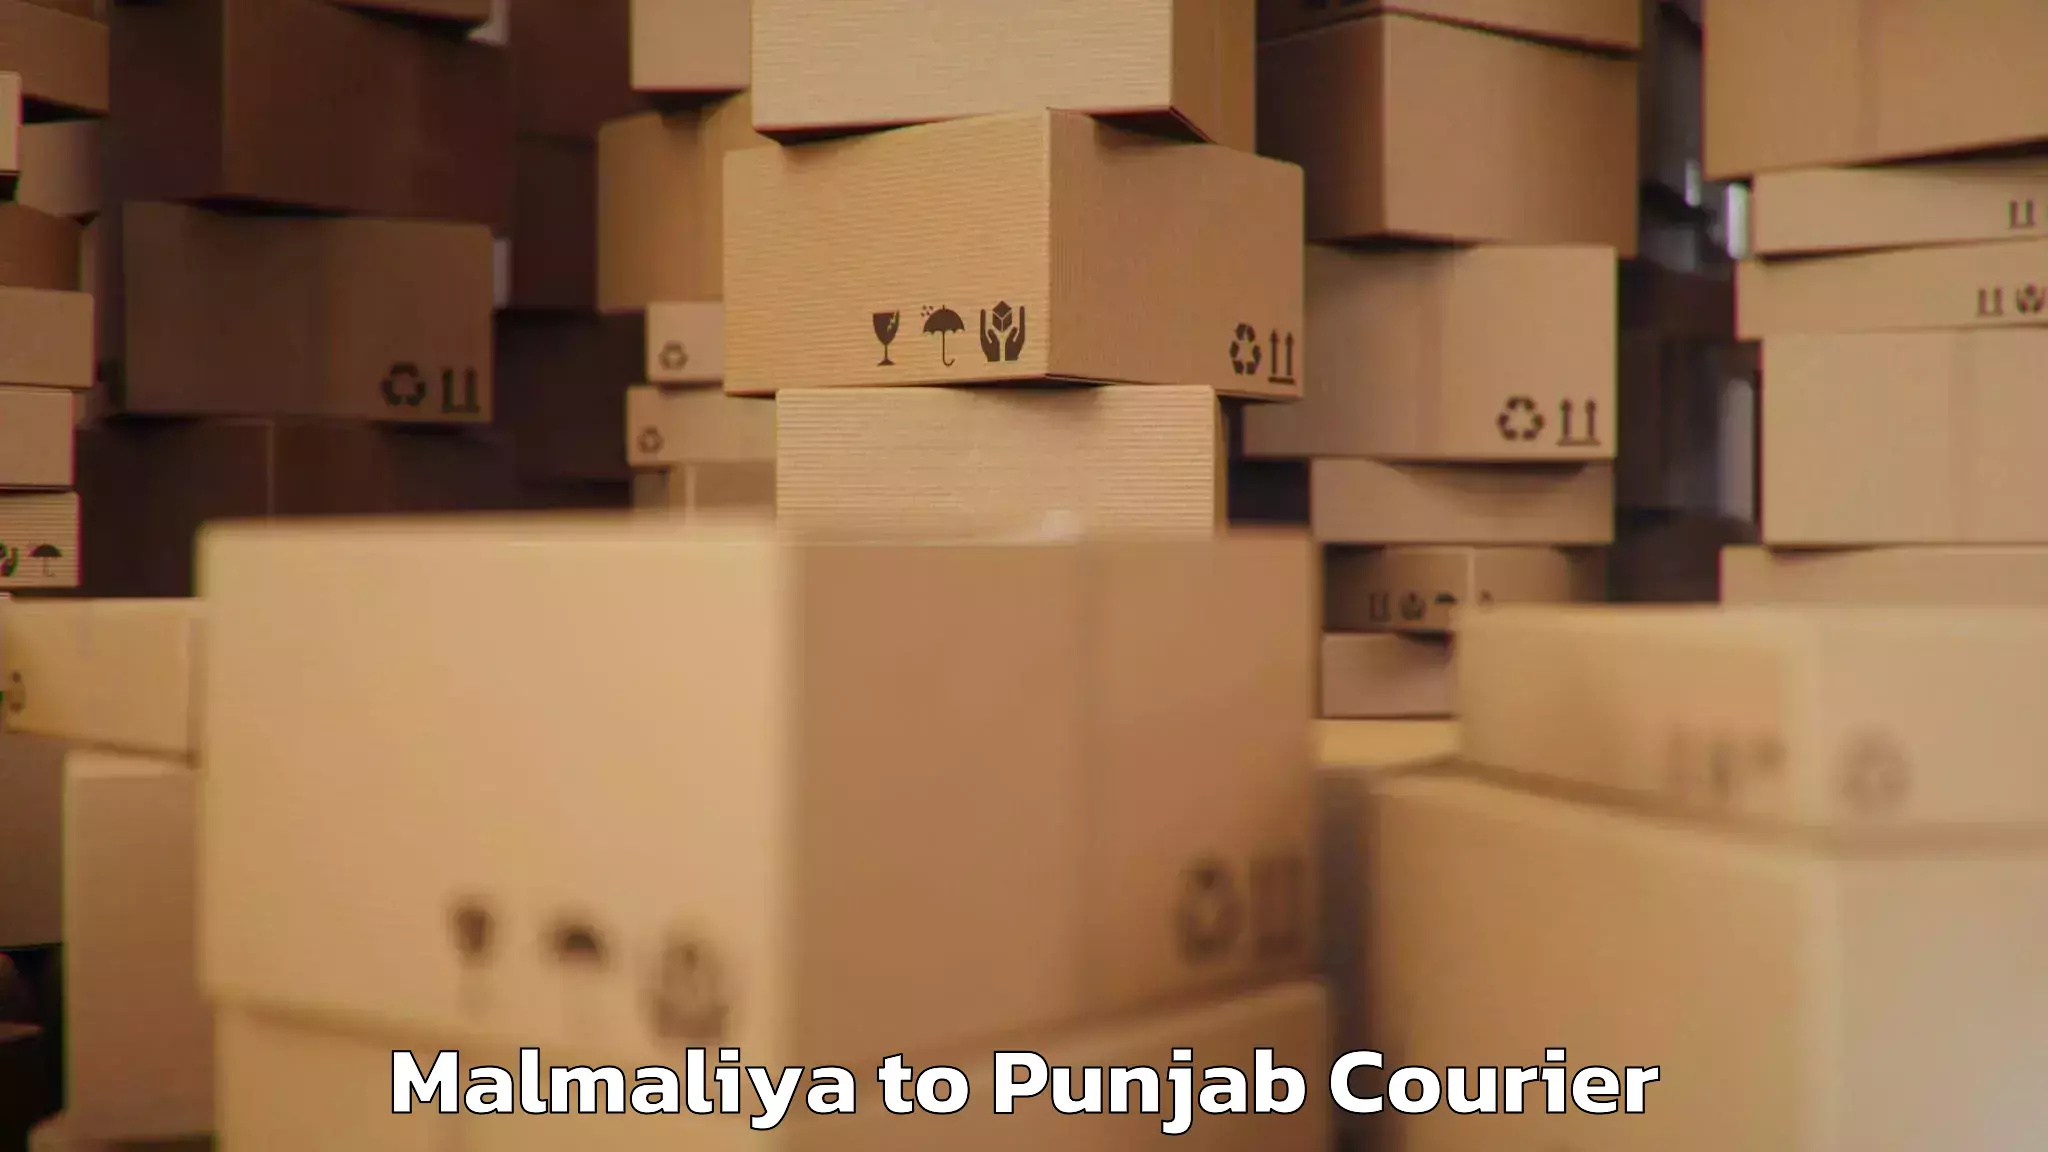 Baggage courier calculator Malmaliya to Punjab